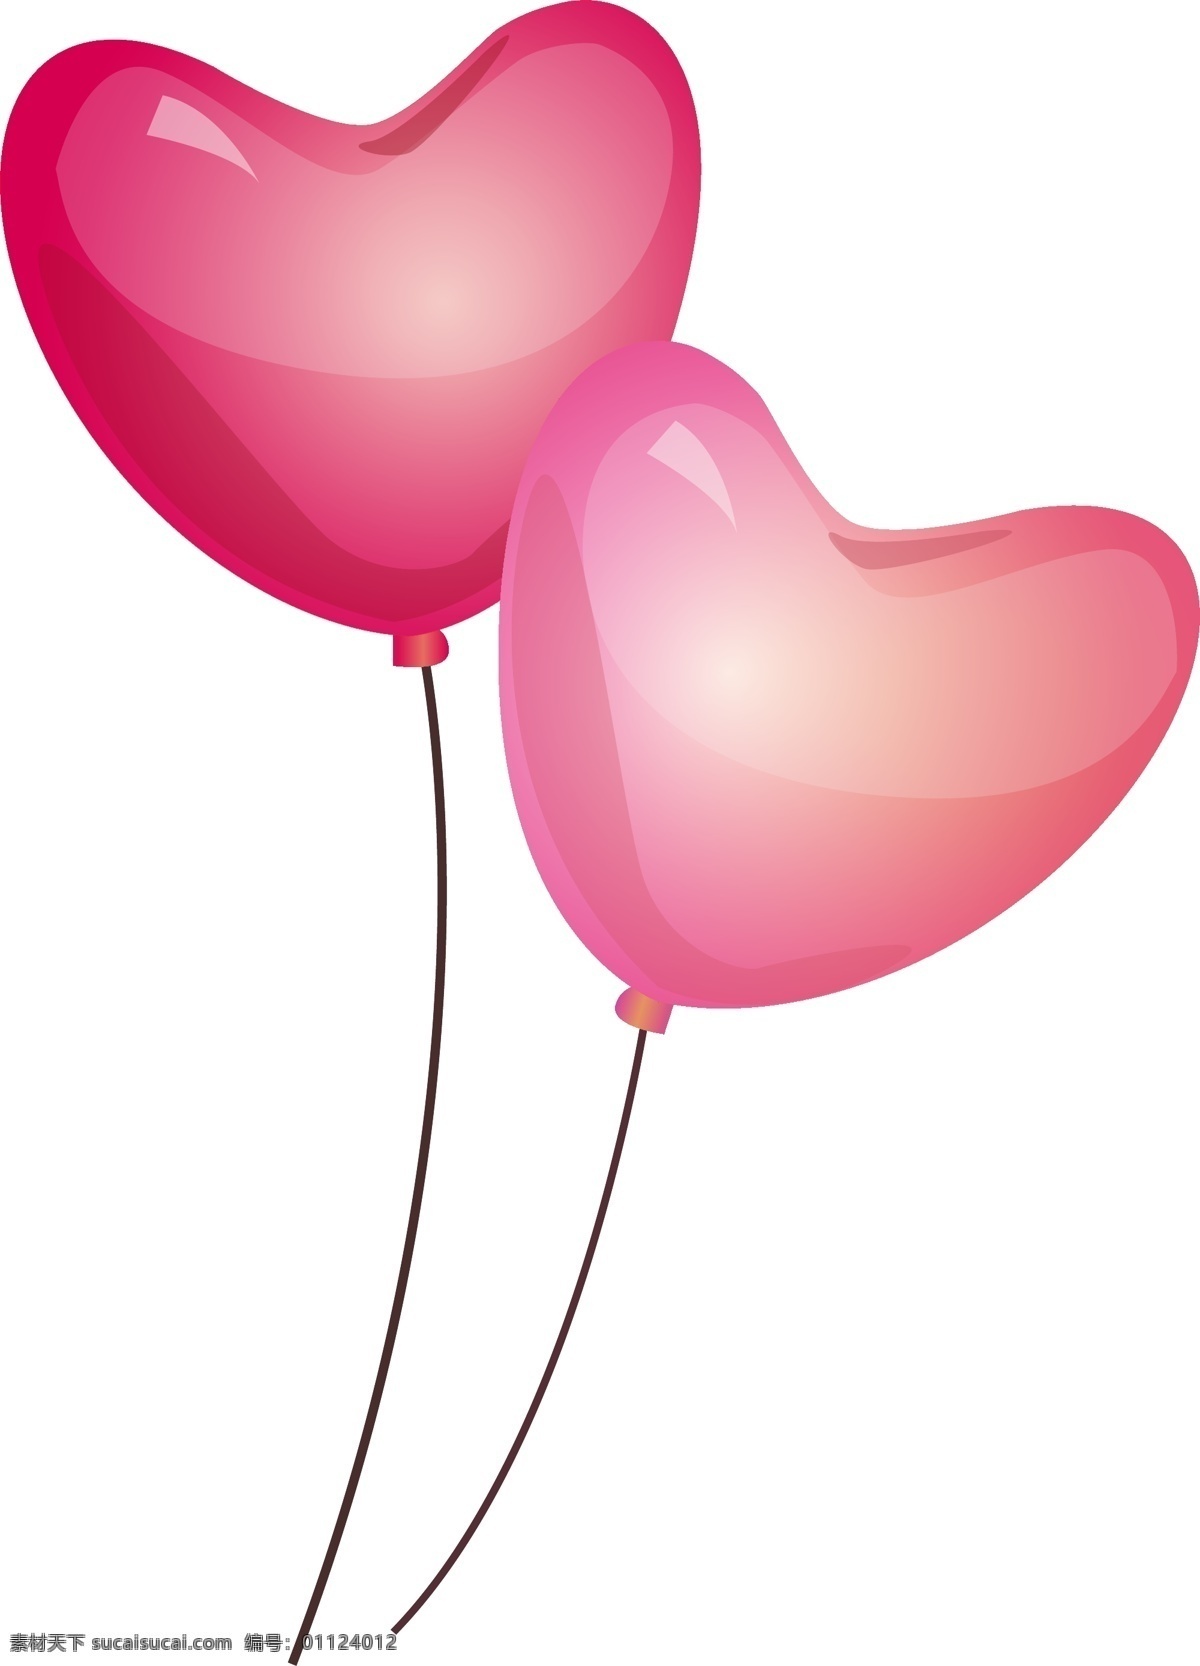 红色 桃 心 气球 插画 红心气球 两个气球 漂浮的气球 气球装饰 浪漫 节日装饰 桃心 卡通气球插画